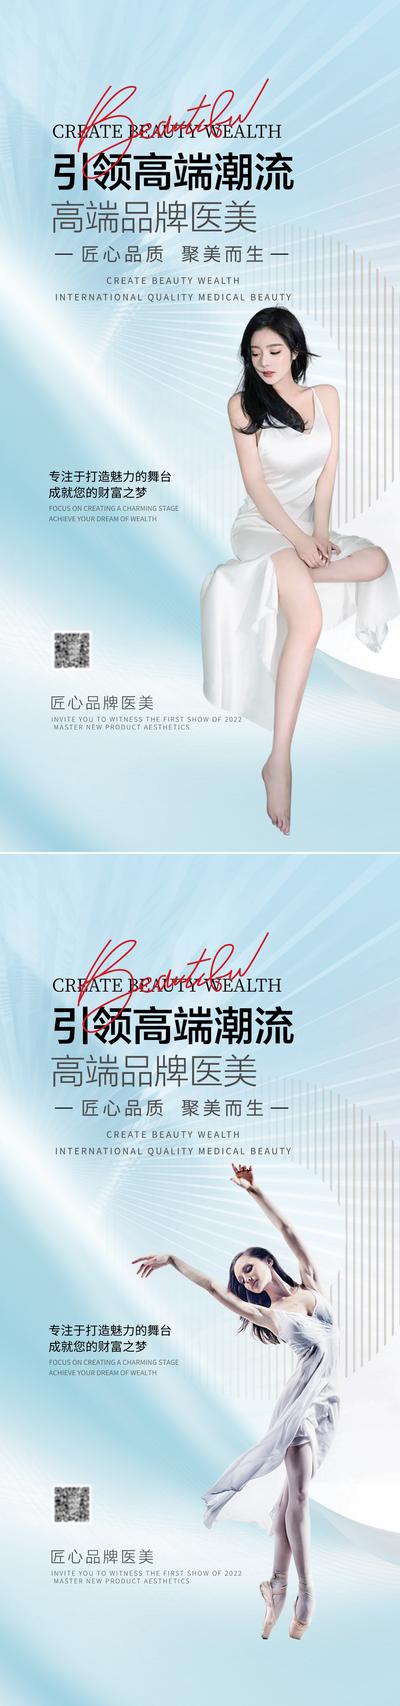 南门网 海报 医美 发布会 邀请函 促销 美容 抗衰 品牌 招商 简约 人物